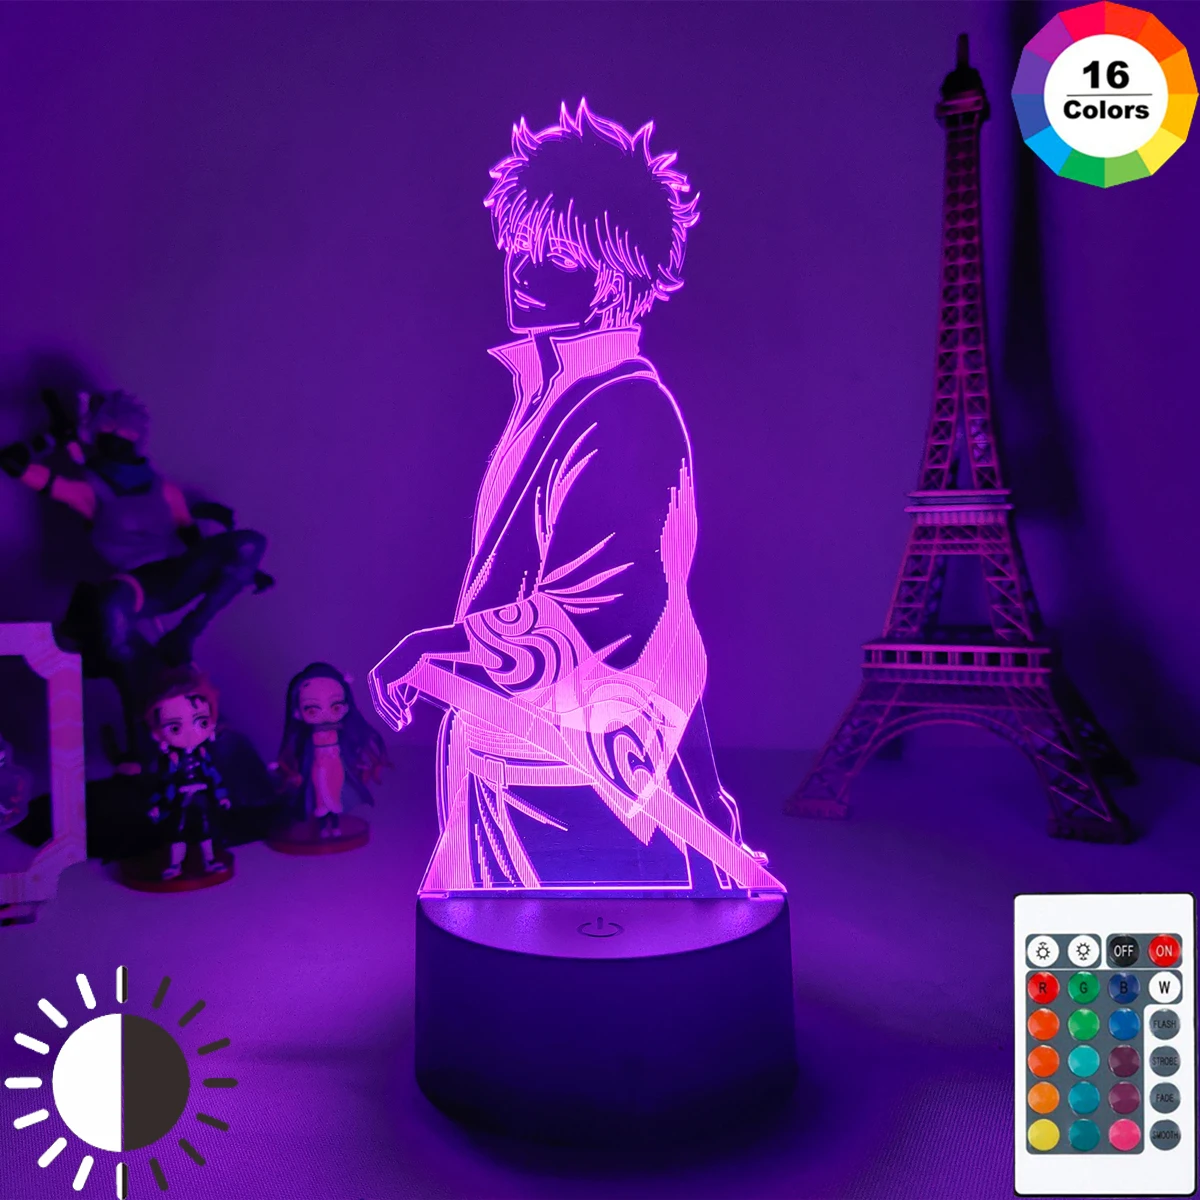 

Японский аниме светильник GINTAMA Sakata Gintoki фигурка Ночник светильник 3D Светодиодная лампа для детей подарок на день рождения настольная лампа ...